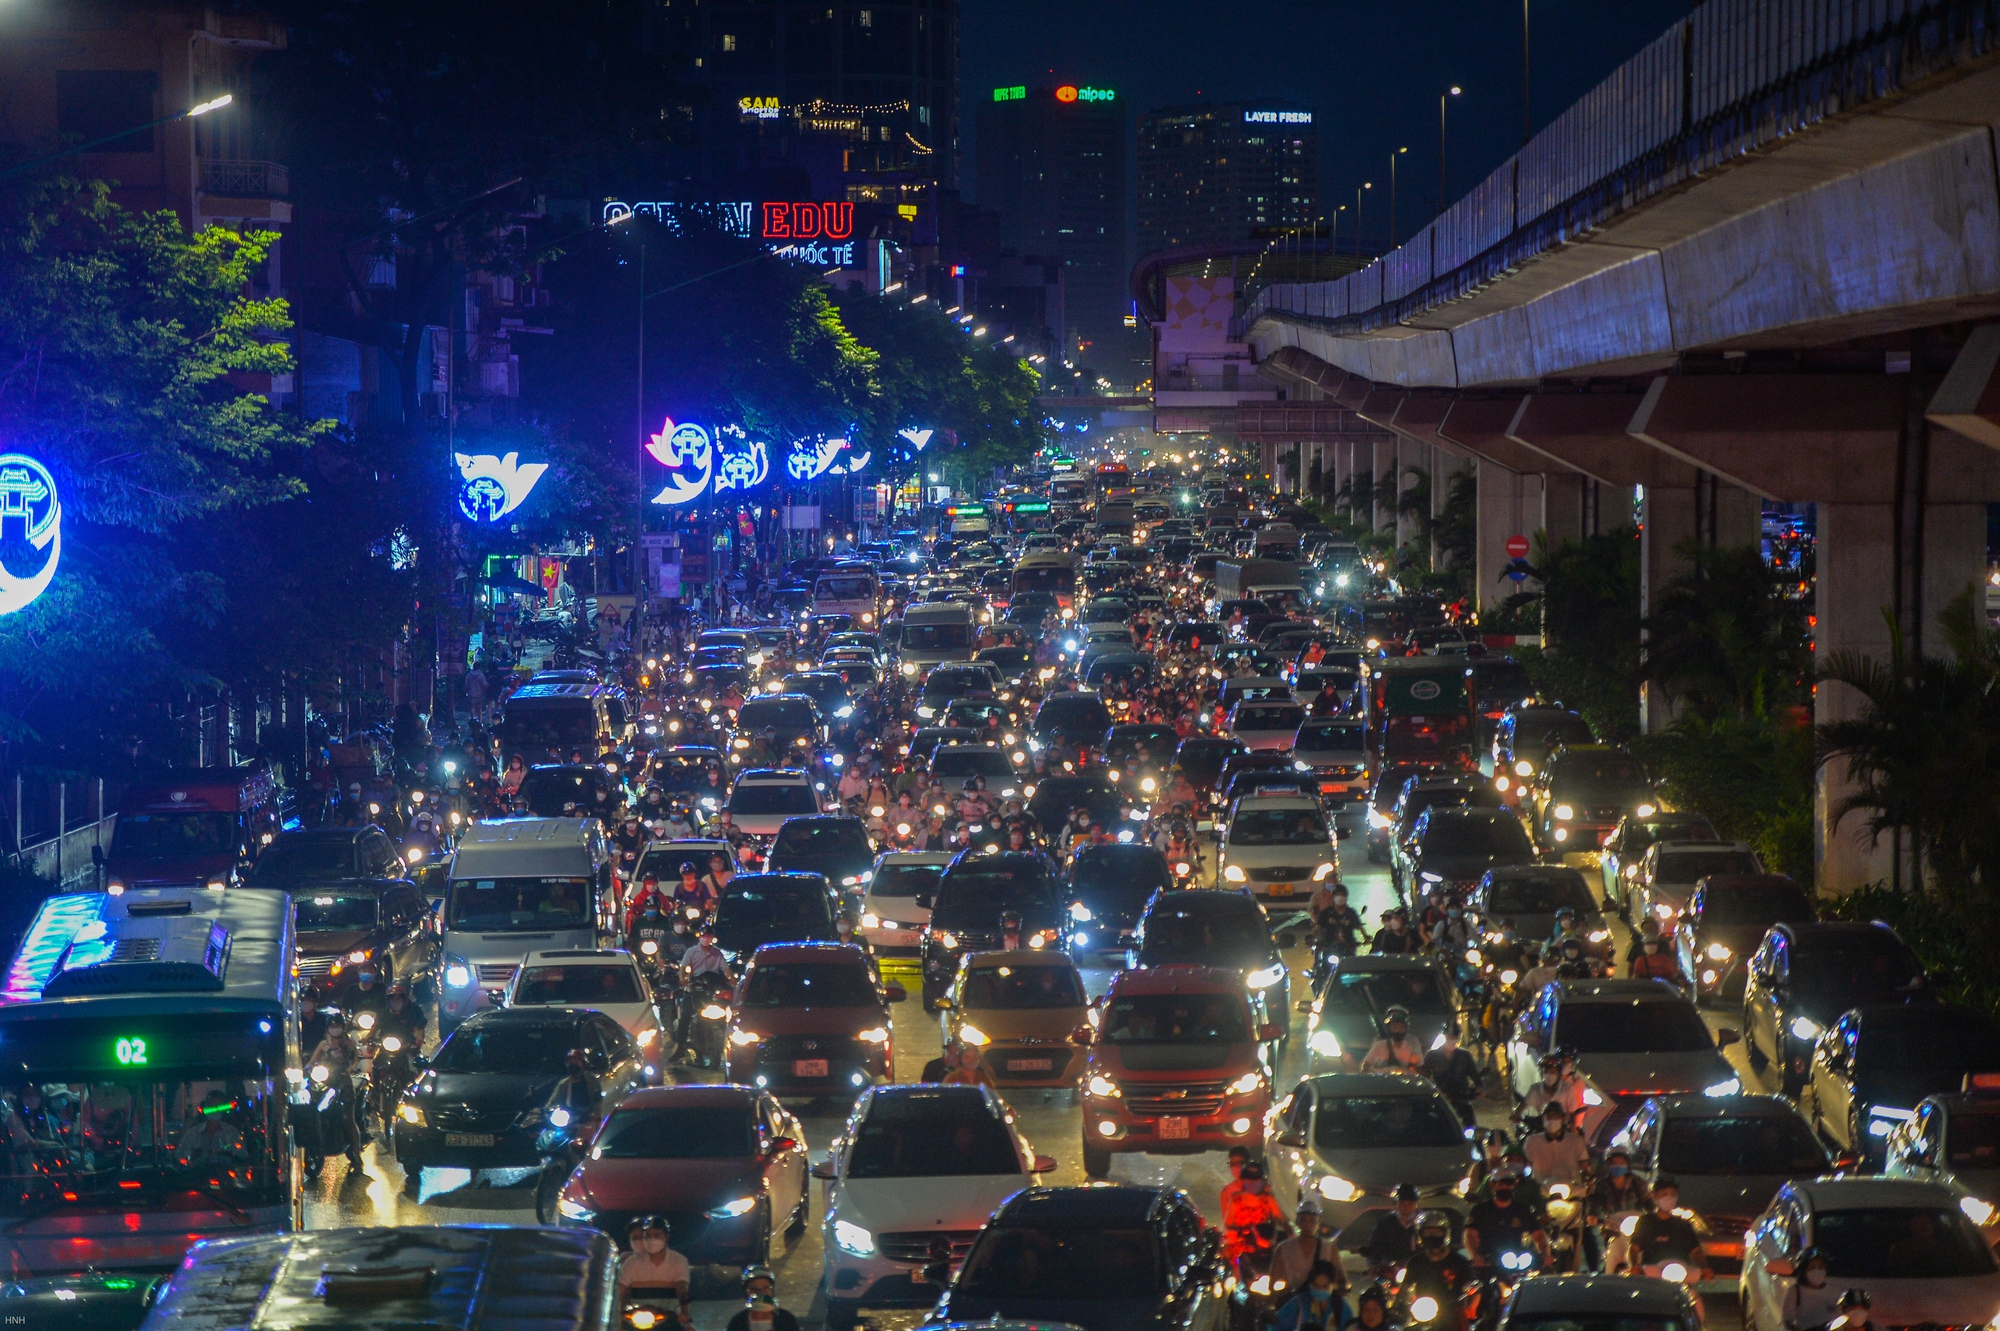 Sau trận mưa ngập, đường phố Hà Nội ùn tắc nghiêm trọng, xe cộ chôn chân nhìn nước rút - Ảnh 9.